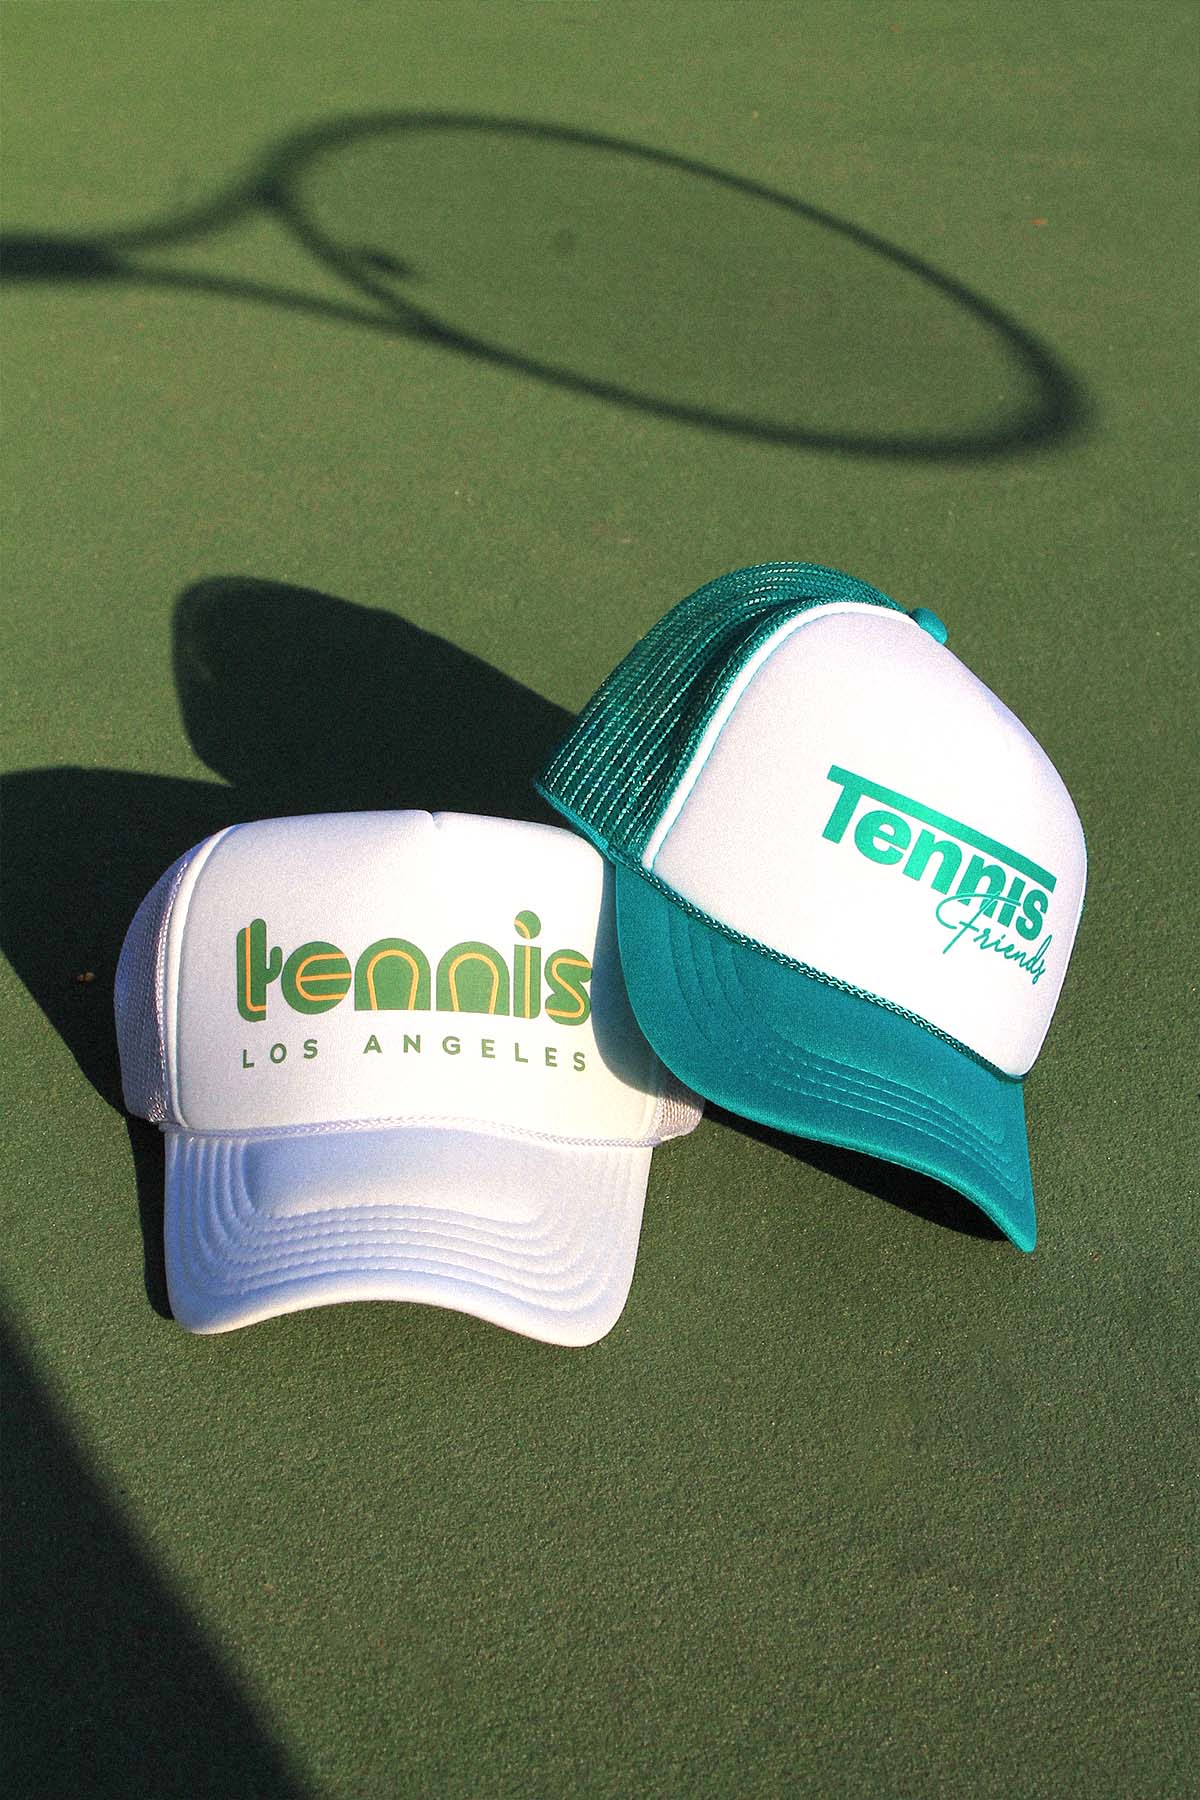 Tennis Friends Trucker Hat in Teal